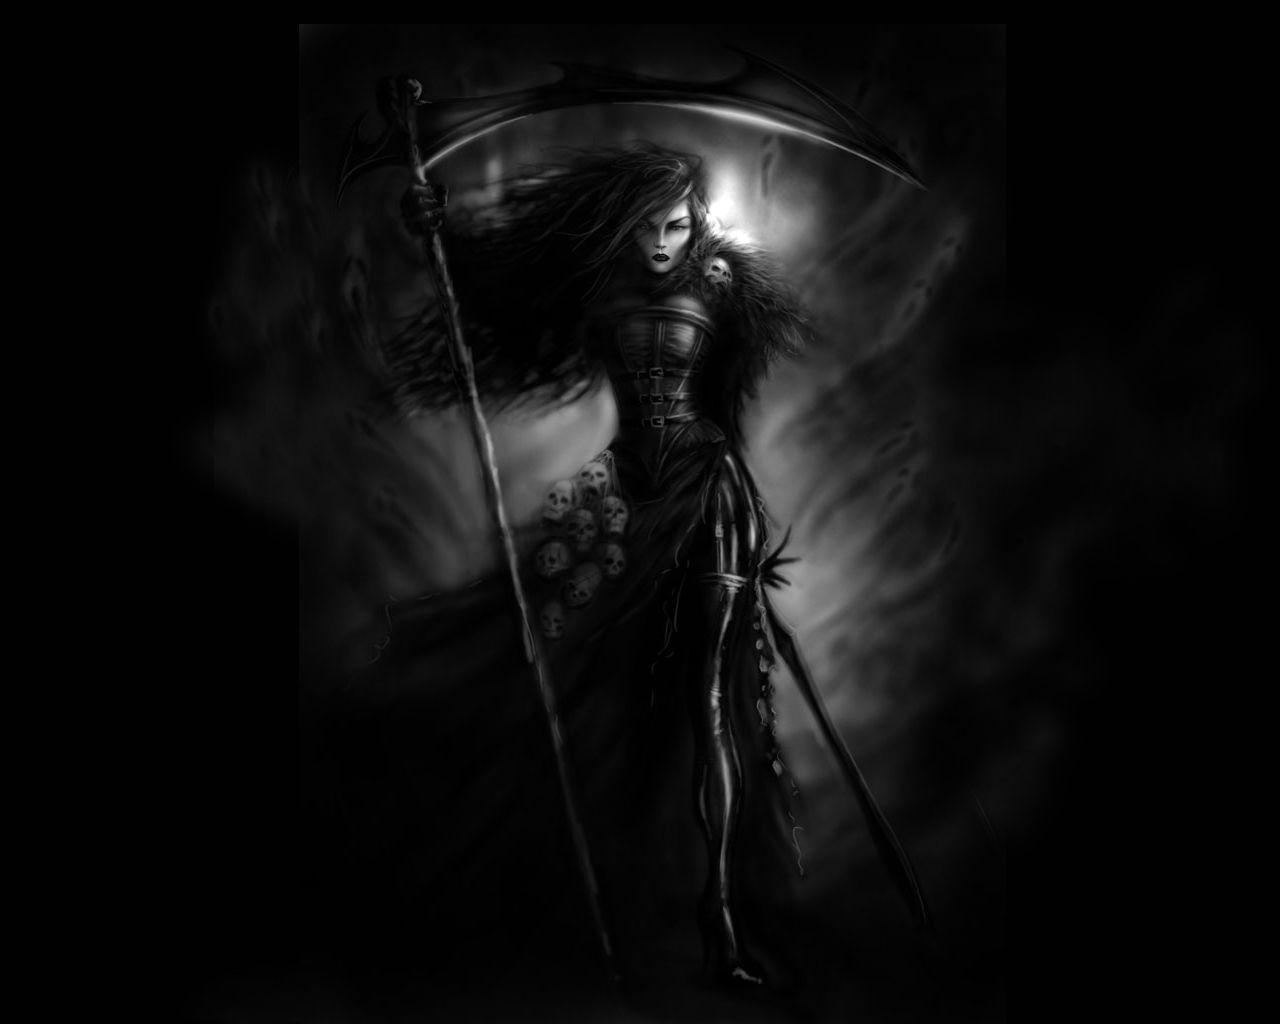 Harvester of Souls #death #reaper #skull #female #wallpaper